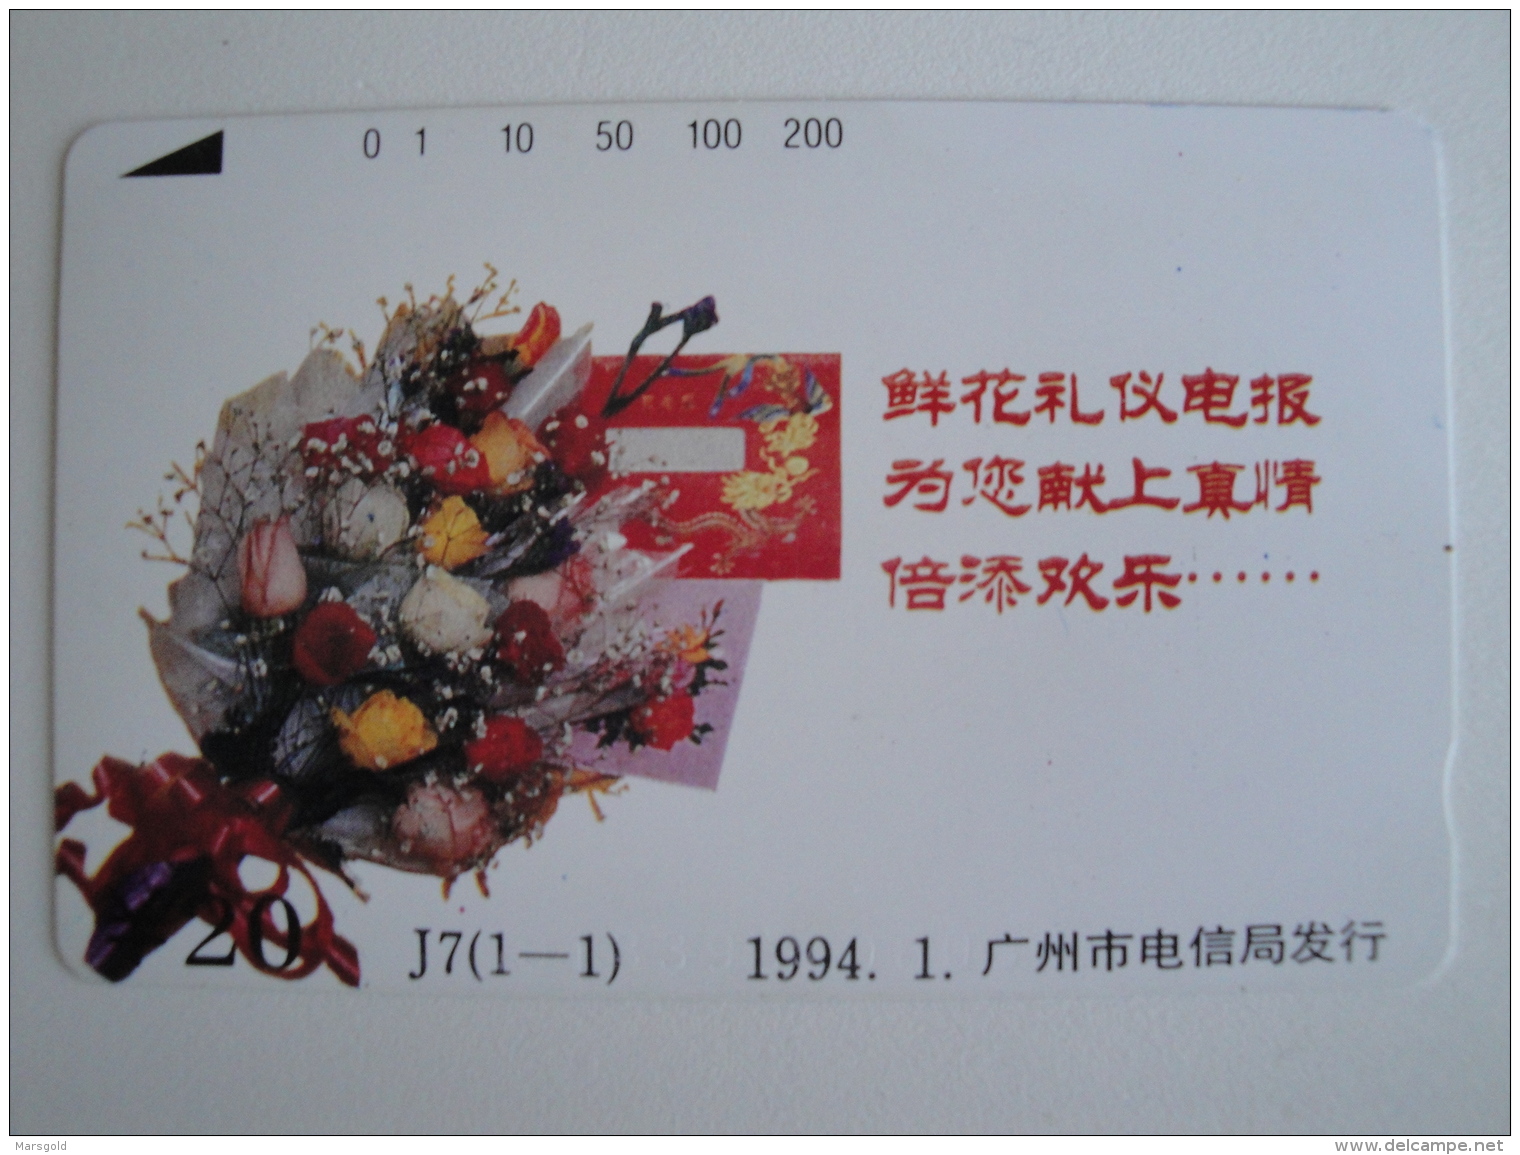 1 Tamura Phonecard From China - Flowers - Unused - China